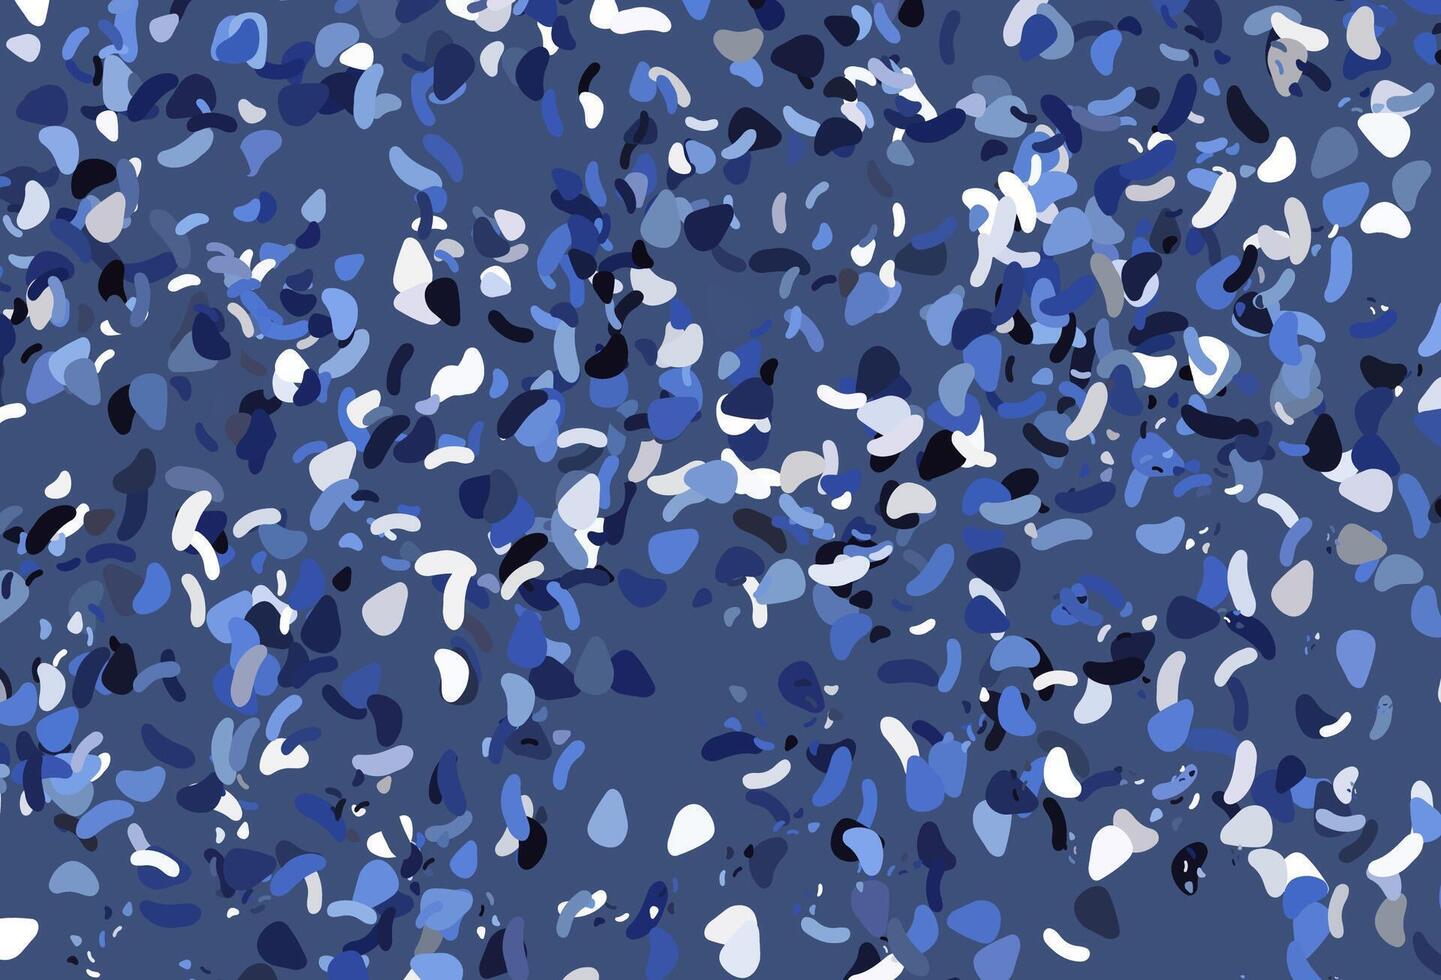 toile de fond de vecteur bleu clair avec des formes abstraites.